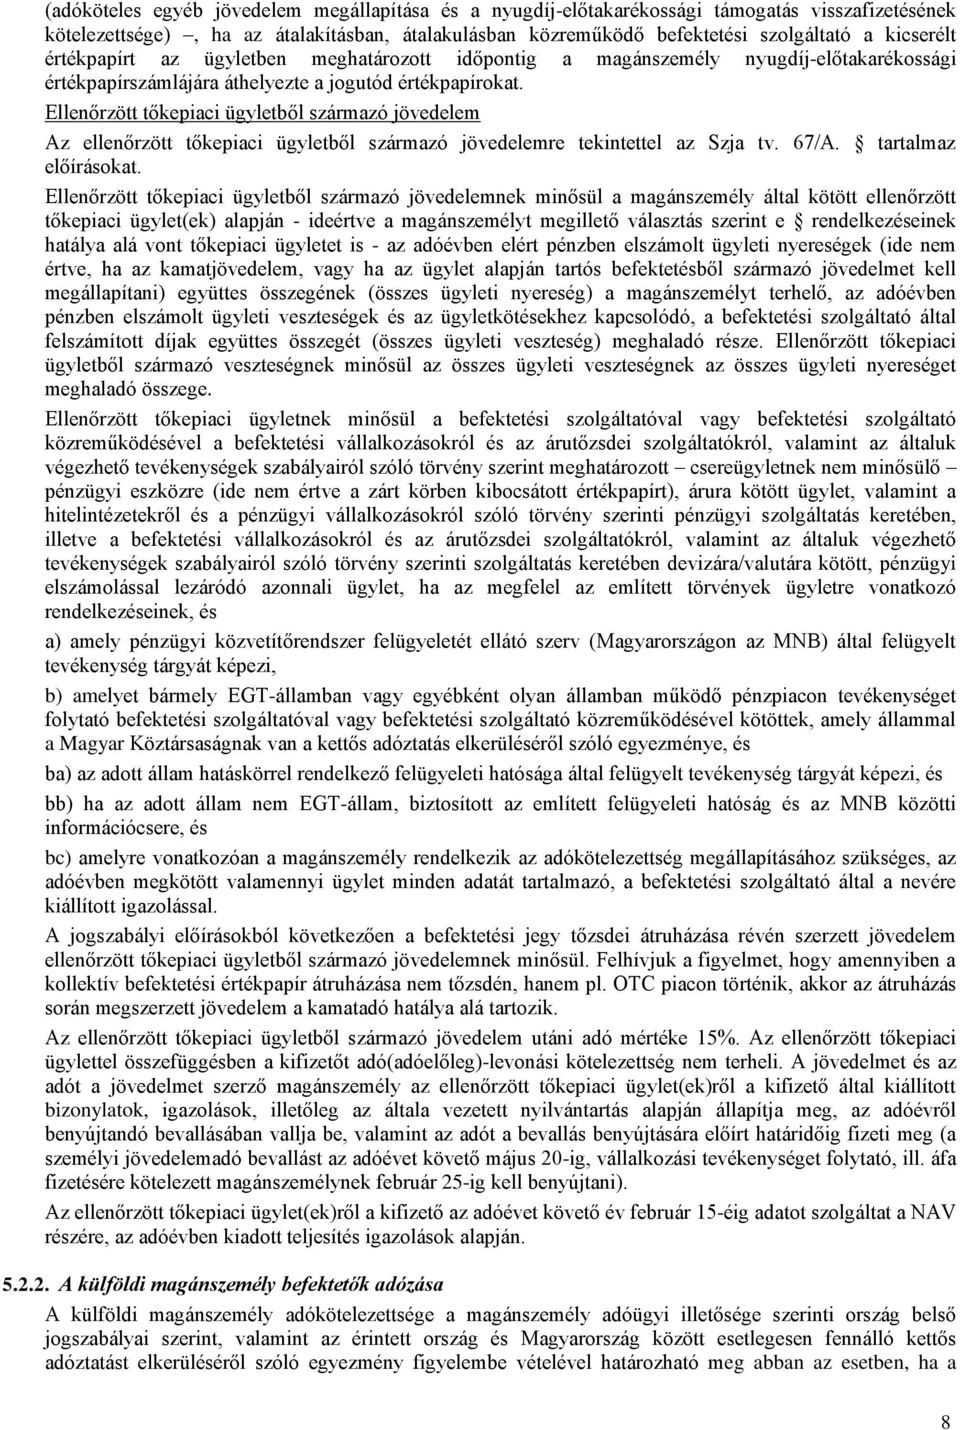 Ellenőrzött tőkepiaci ügyletből származó jövedelem Az ellenőrzött tőkepiaci ügyletből származó jövedelemre tekintettel az Szja tv. 67/A. tartalmaz előírásokat.